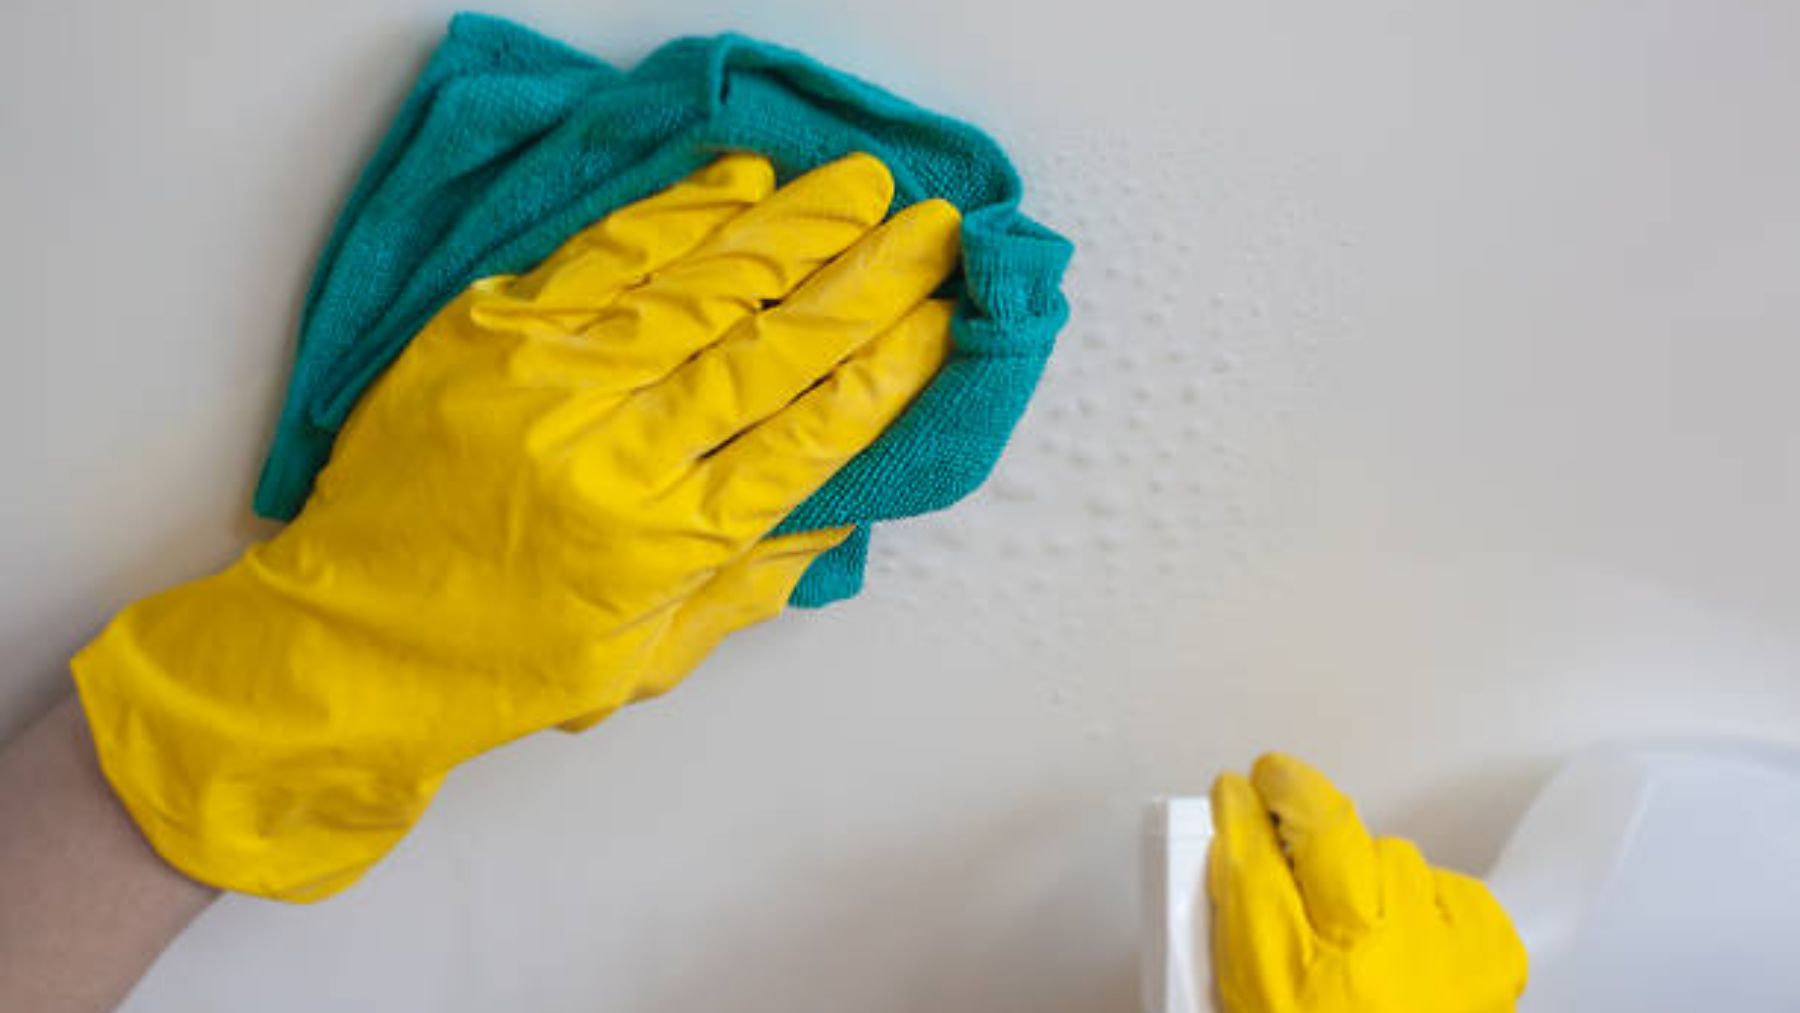 4 trucos para limpiar las paredes manchadas - Mejor con Salud